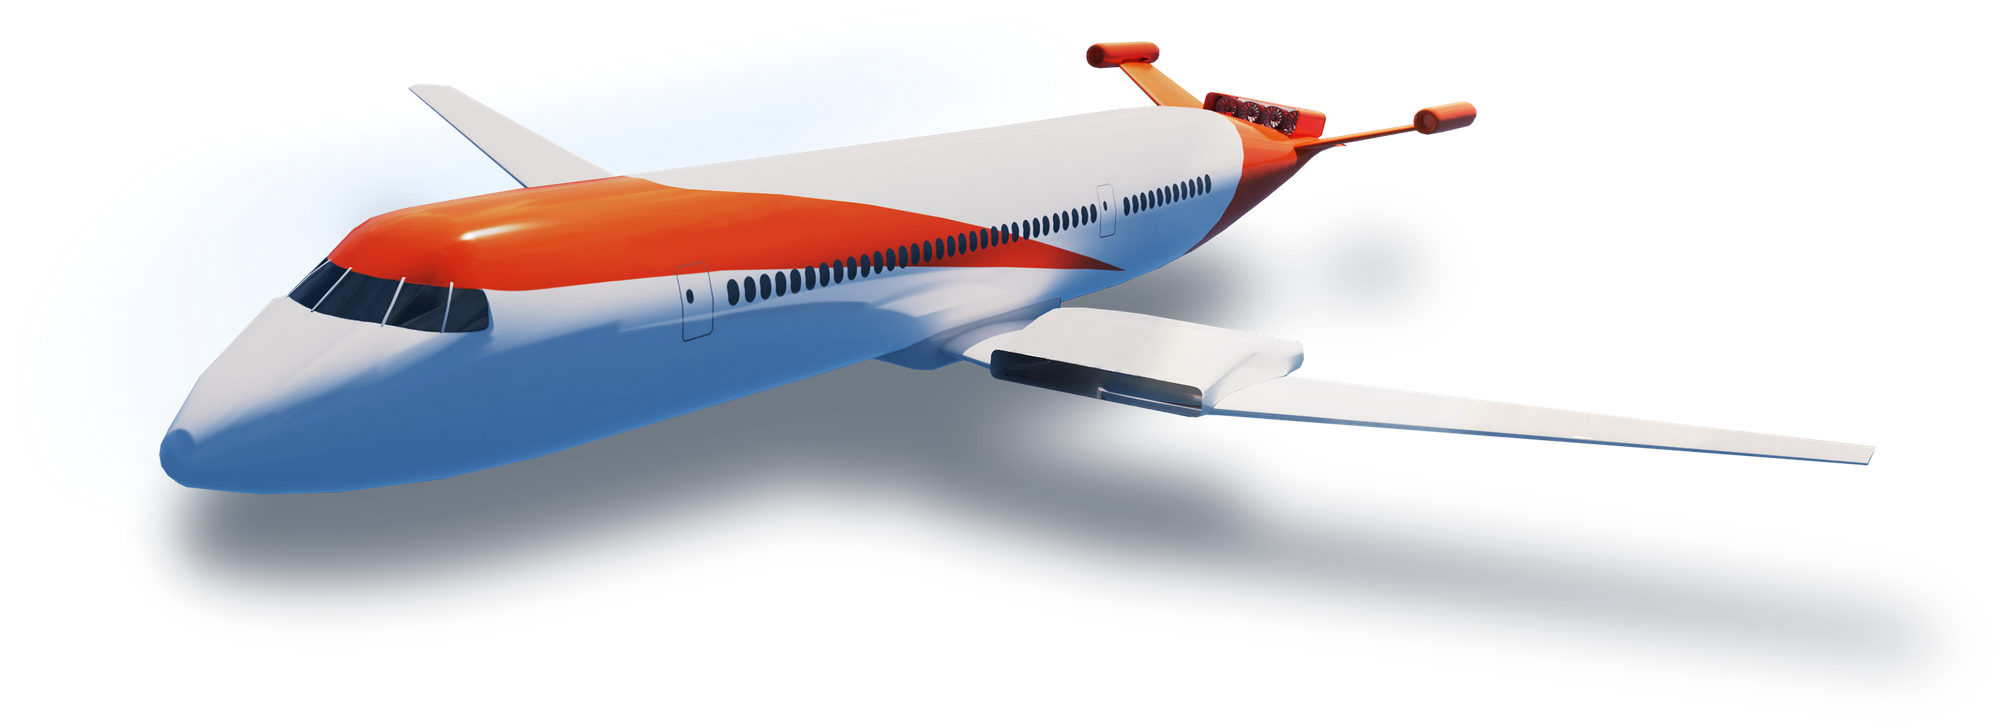 تصویر CG از هواپیما با استفاده از موتورهای رایت